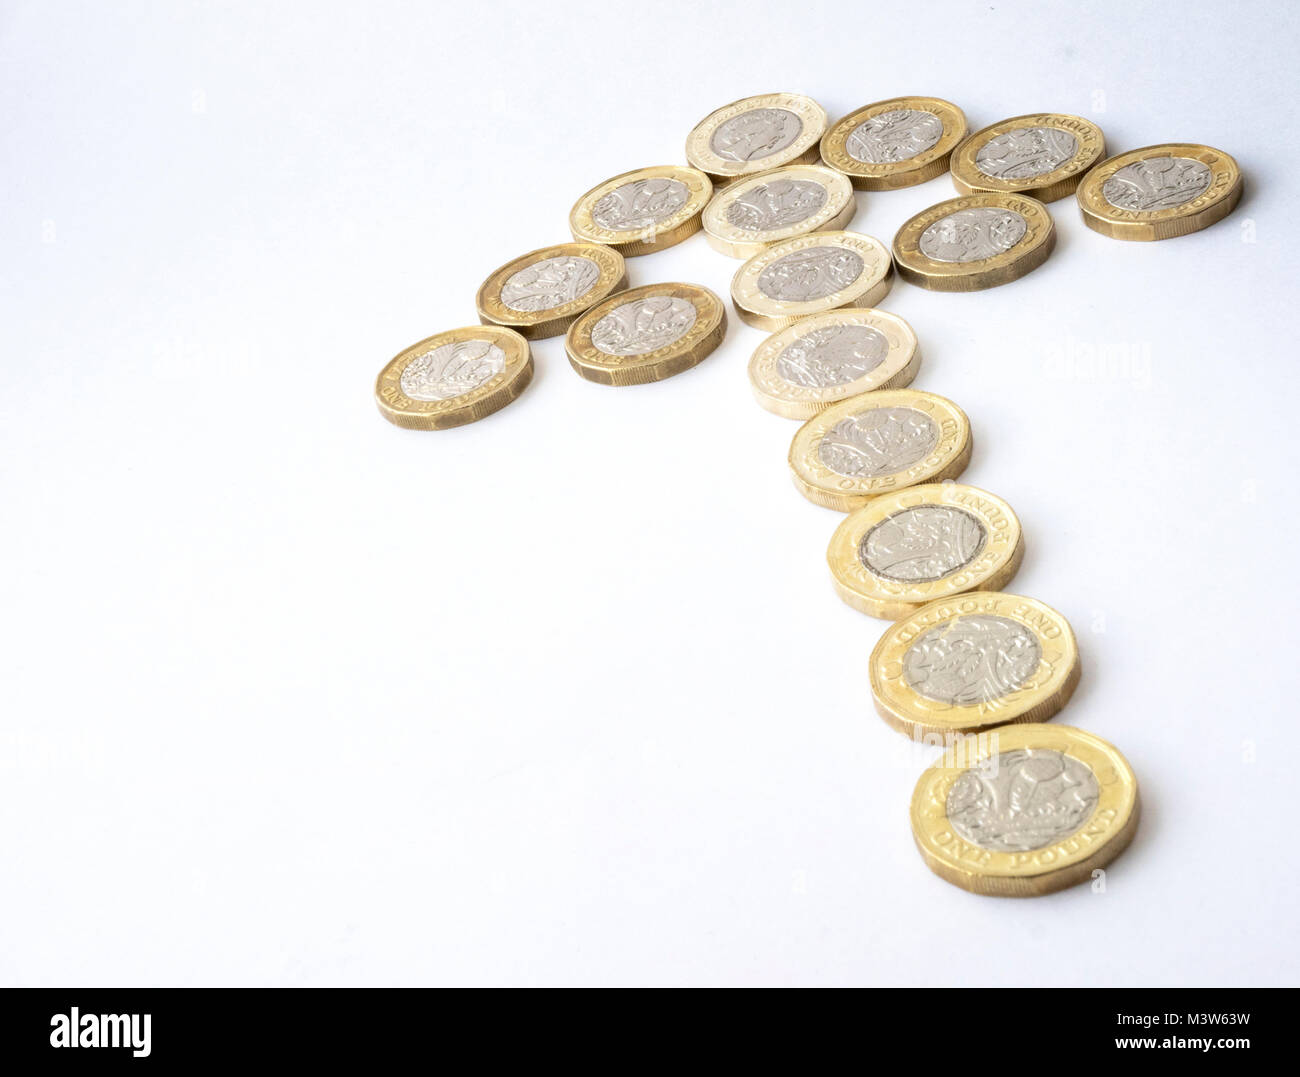 Diversi nuovi dodici lati sterlina britannica monete disposte sotto forma di una freccia che denota una tendenza al rialzo Foto Stock